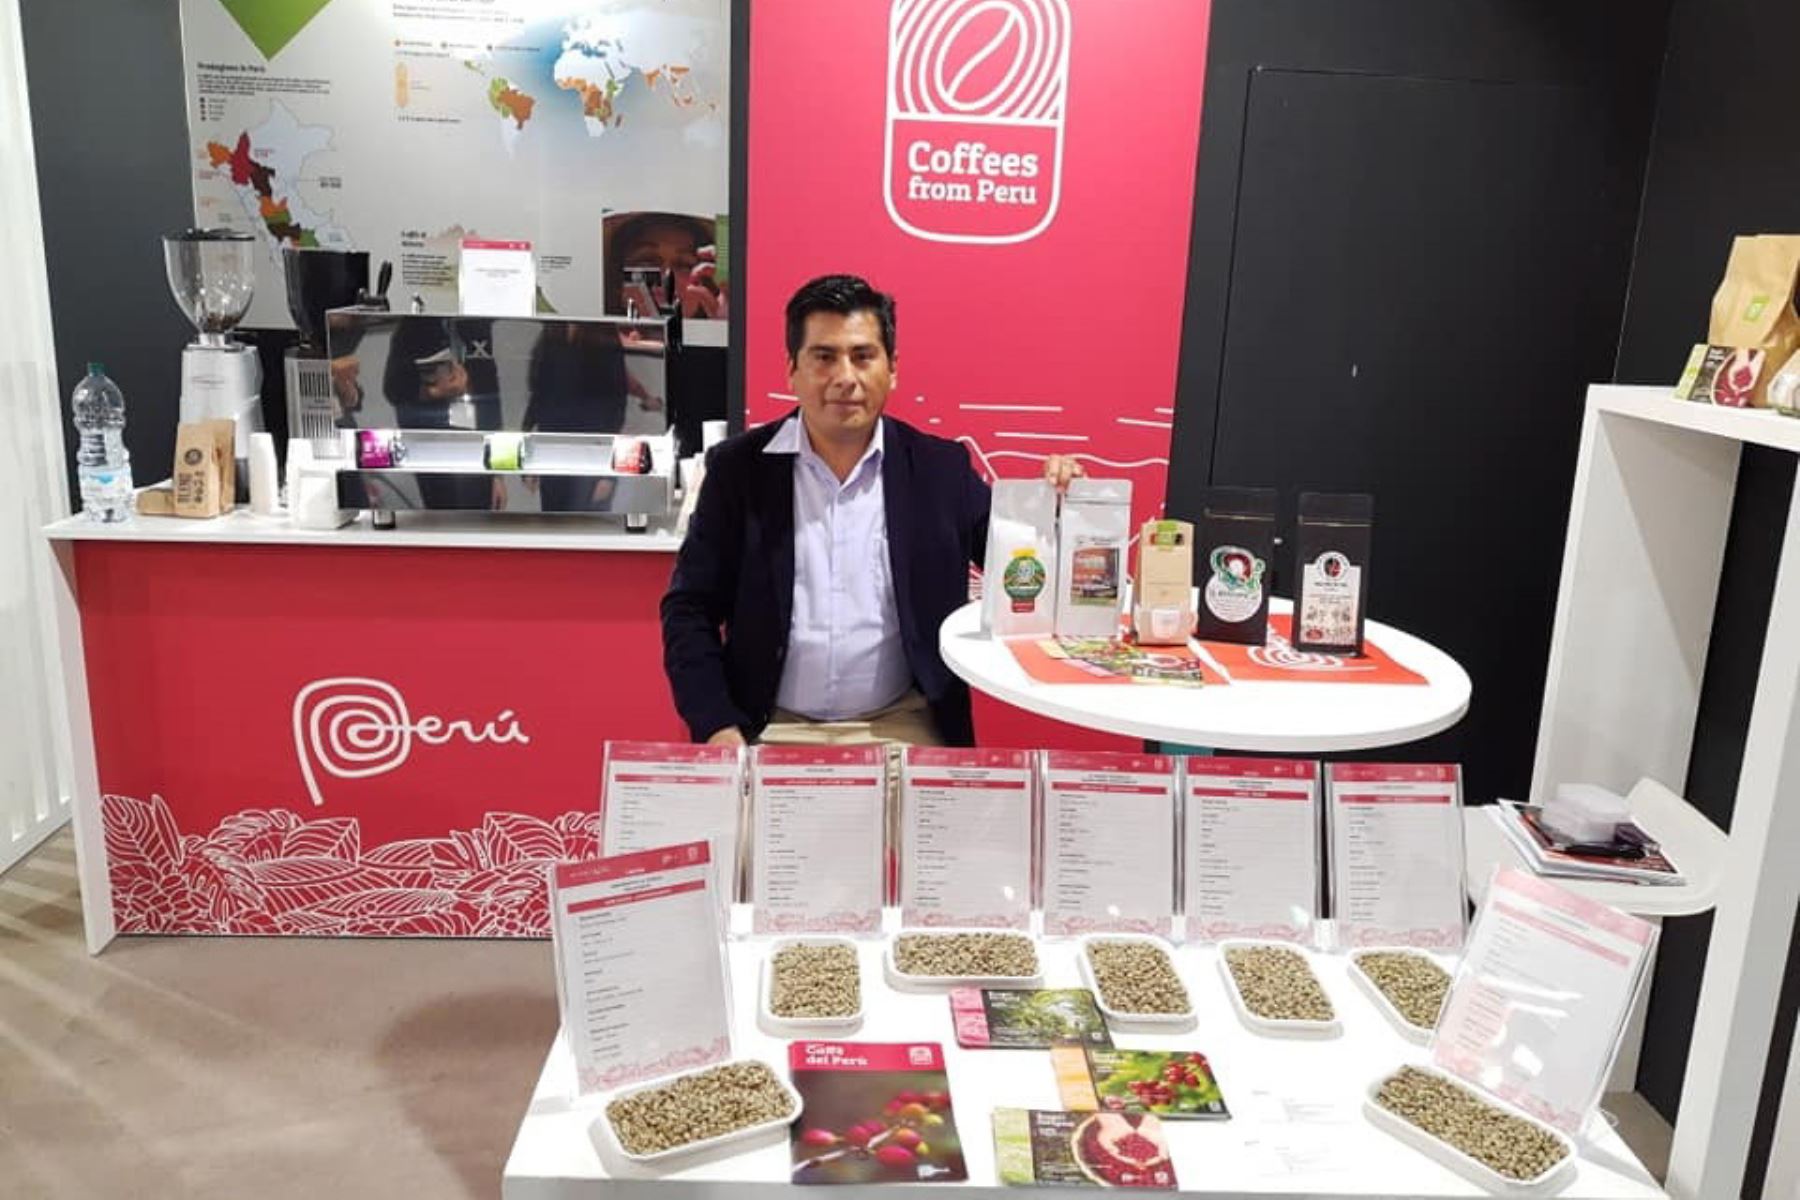 Quinto concurso mundial de café, que se desarrolló en Francia, reconoció la calidad del café de Perú, en especial al que se produce en Puno.